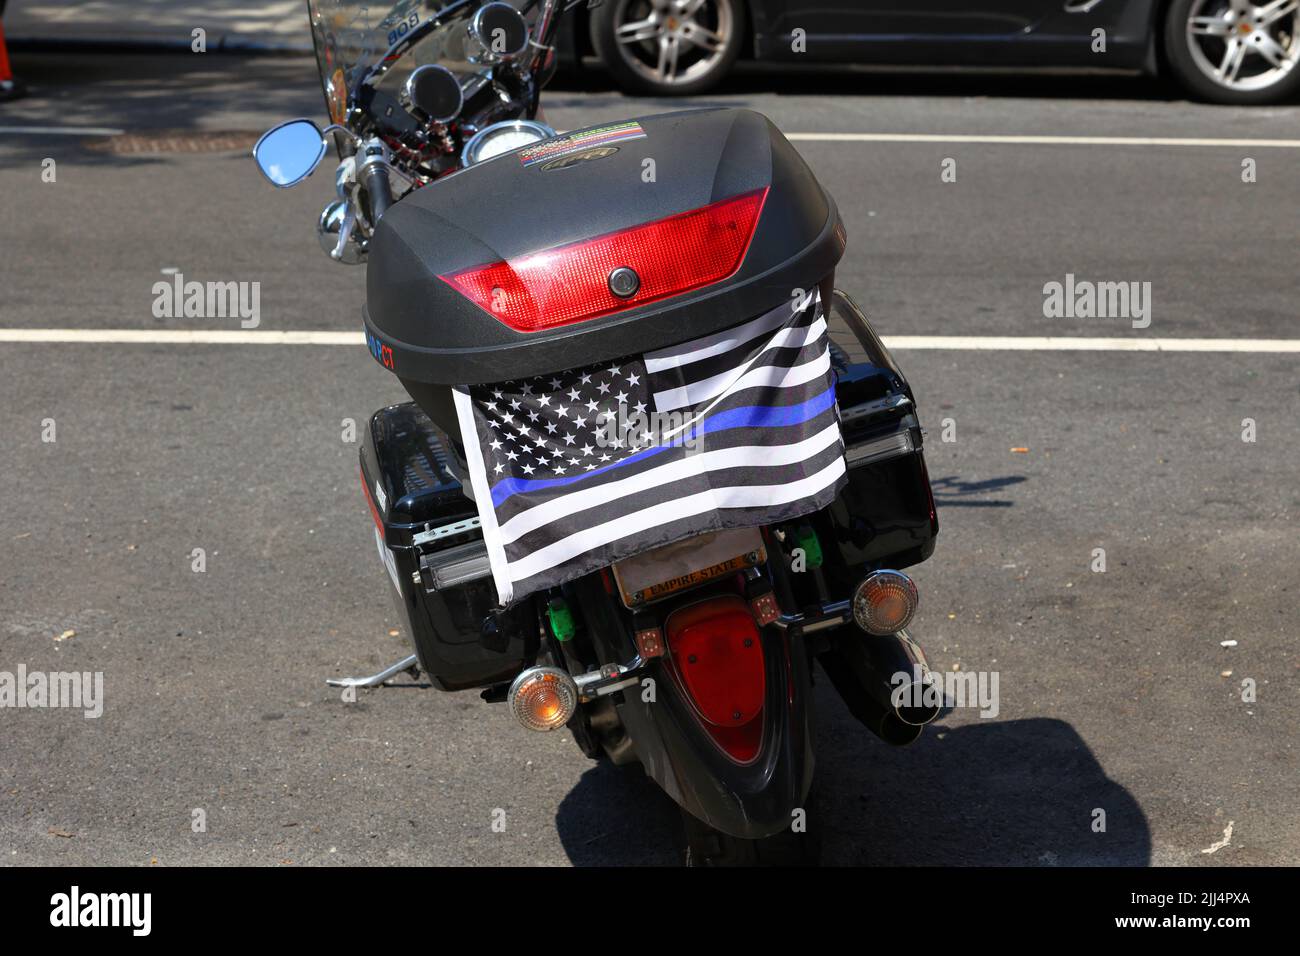 Un léger drapeau bleu « Blue Lives Matter » sur une moto dont la plaque d'immatriculation est obstruée et masquée. New York, 20 juillet 2022. Banque D'Images